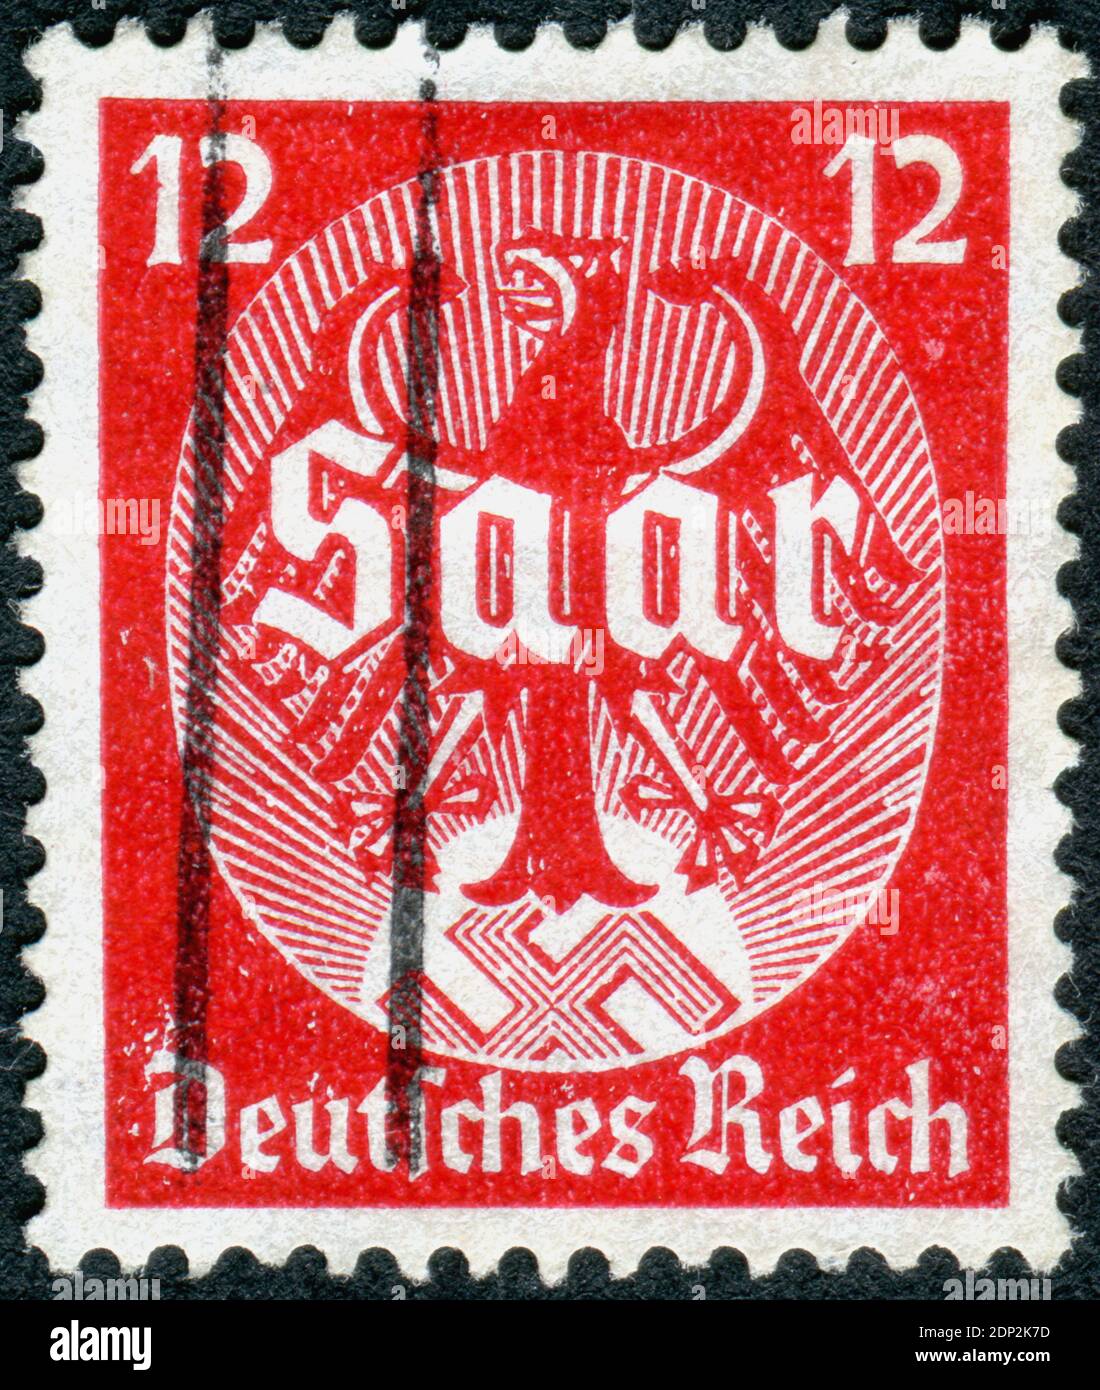 ALLEMAGNE - VERS 1934: Timbre-poste imprimé en Allemagne, dédié au plébiscite de Saar le 13 janvier 1935, a montré un aigle impérial avec l'inscription 'saar', vers 1934 Banque D'Images